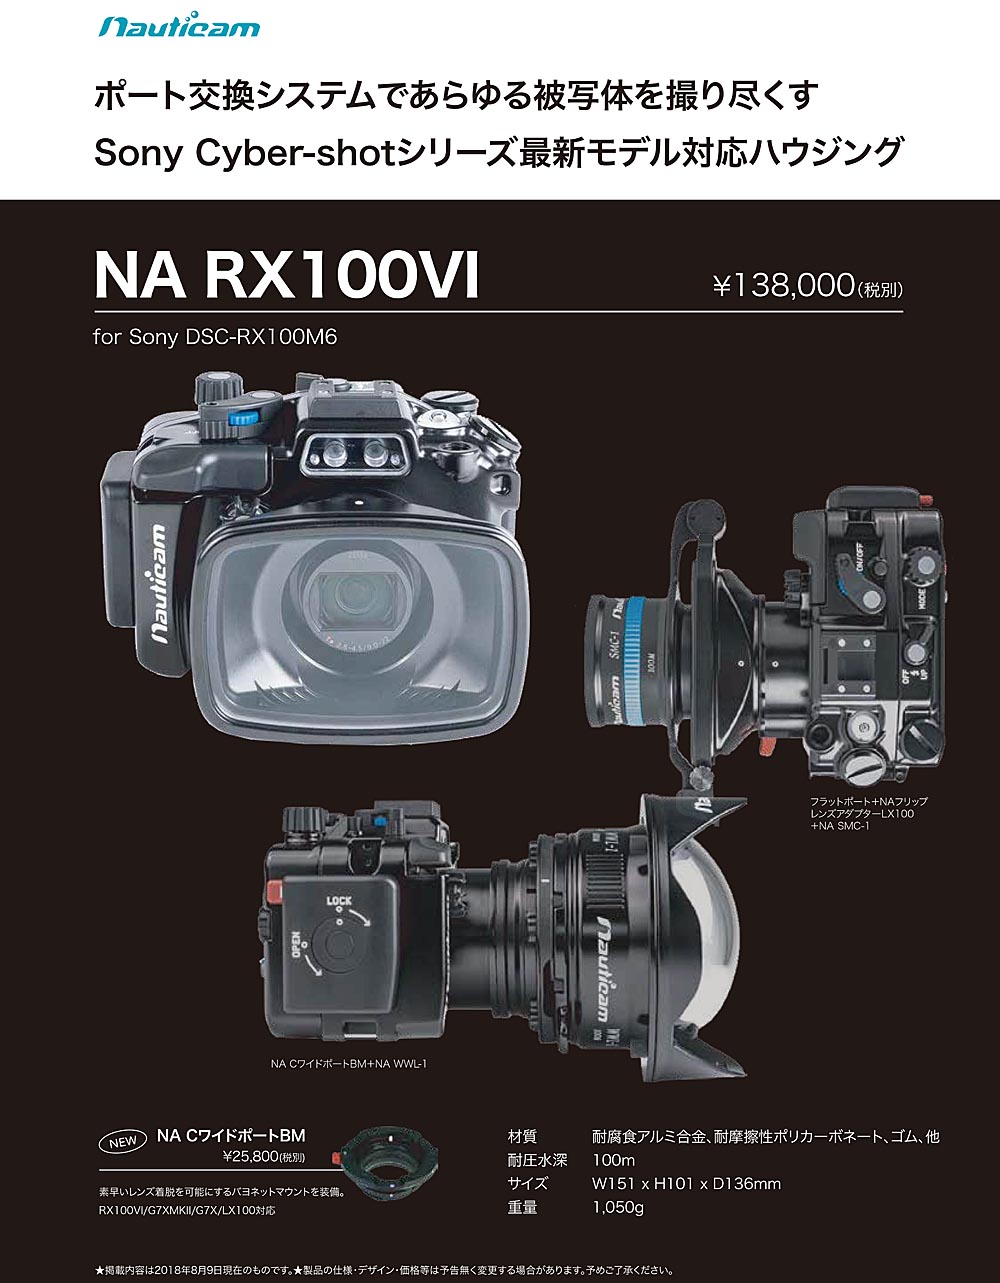 デジタル一眼レフカメラ防水ケース(SONY DSC-RX100M6専用)Nauticam(ノーティカム)RX100VI